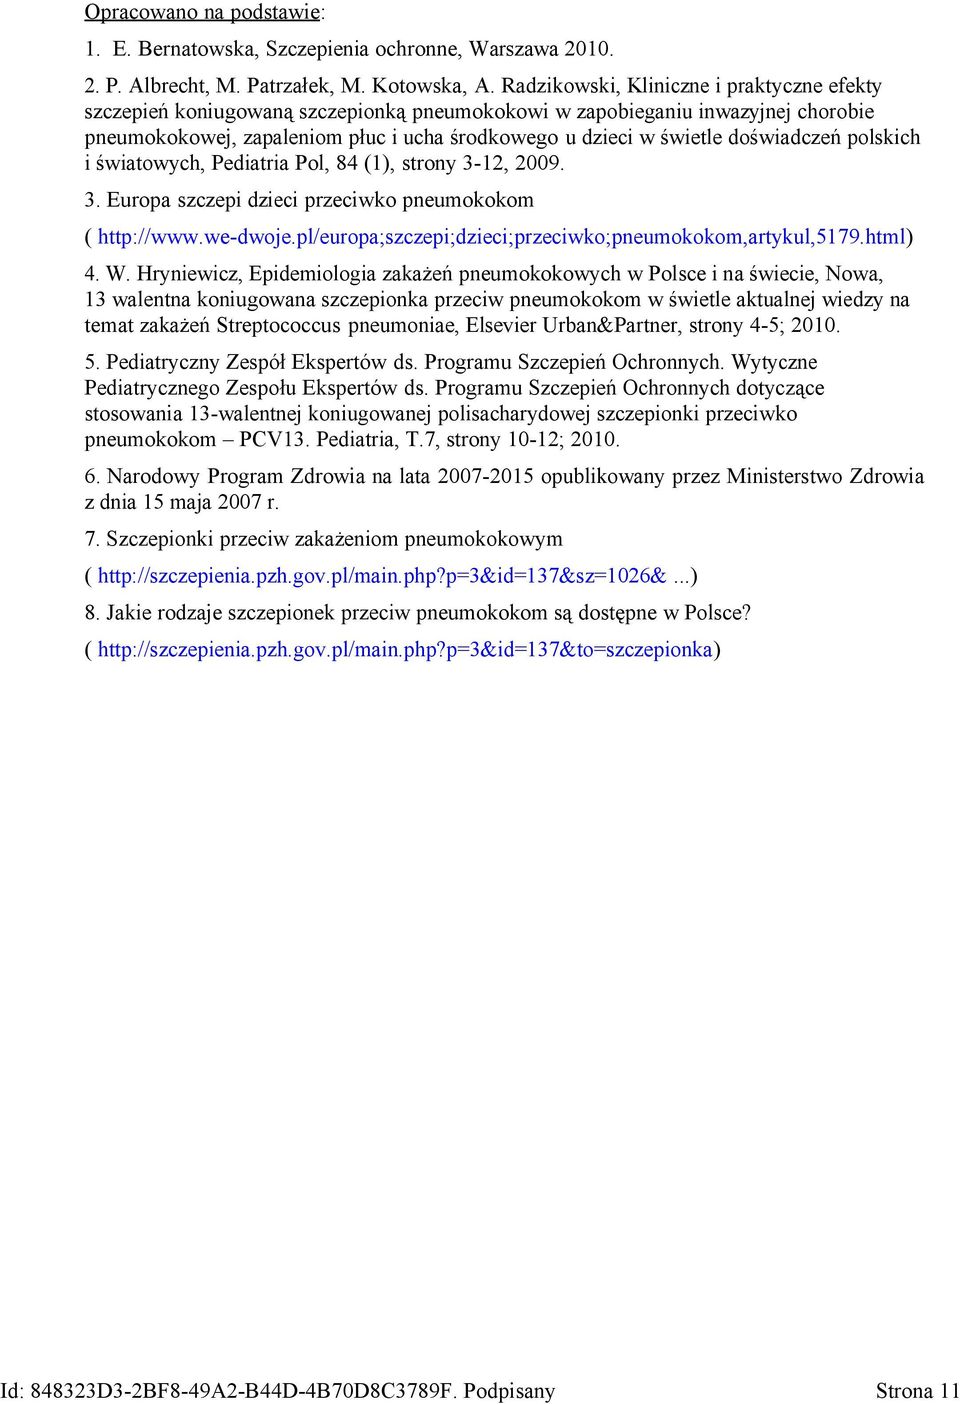 doświadczeń polskich i światowych, Pediatria Pol, 84 (1), strony 3-12, 2009. 3. Europa szczepi dzieci przeciwko pneumokokom ( http://www.we-dwoje.